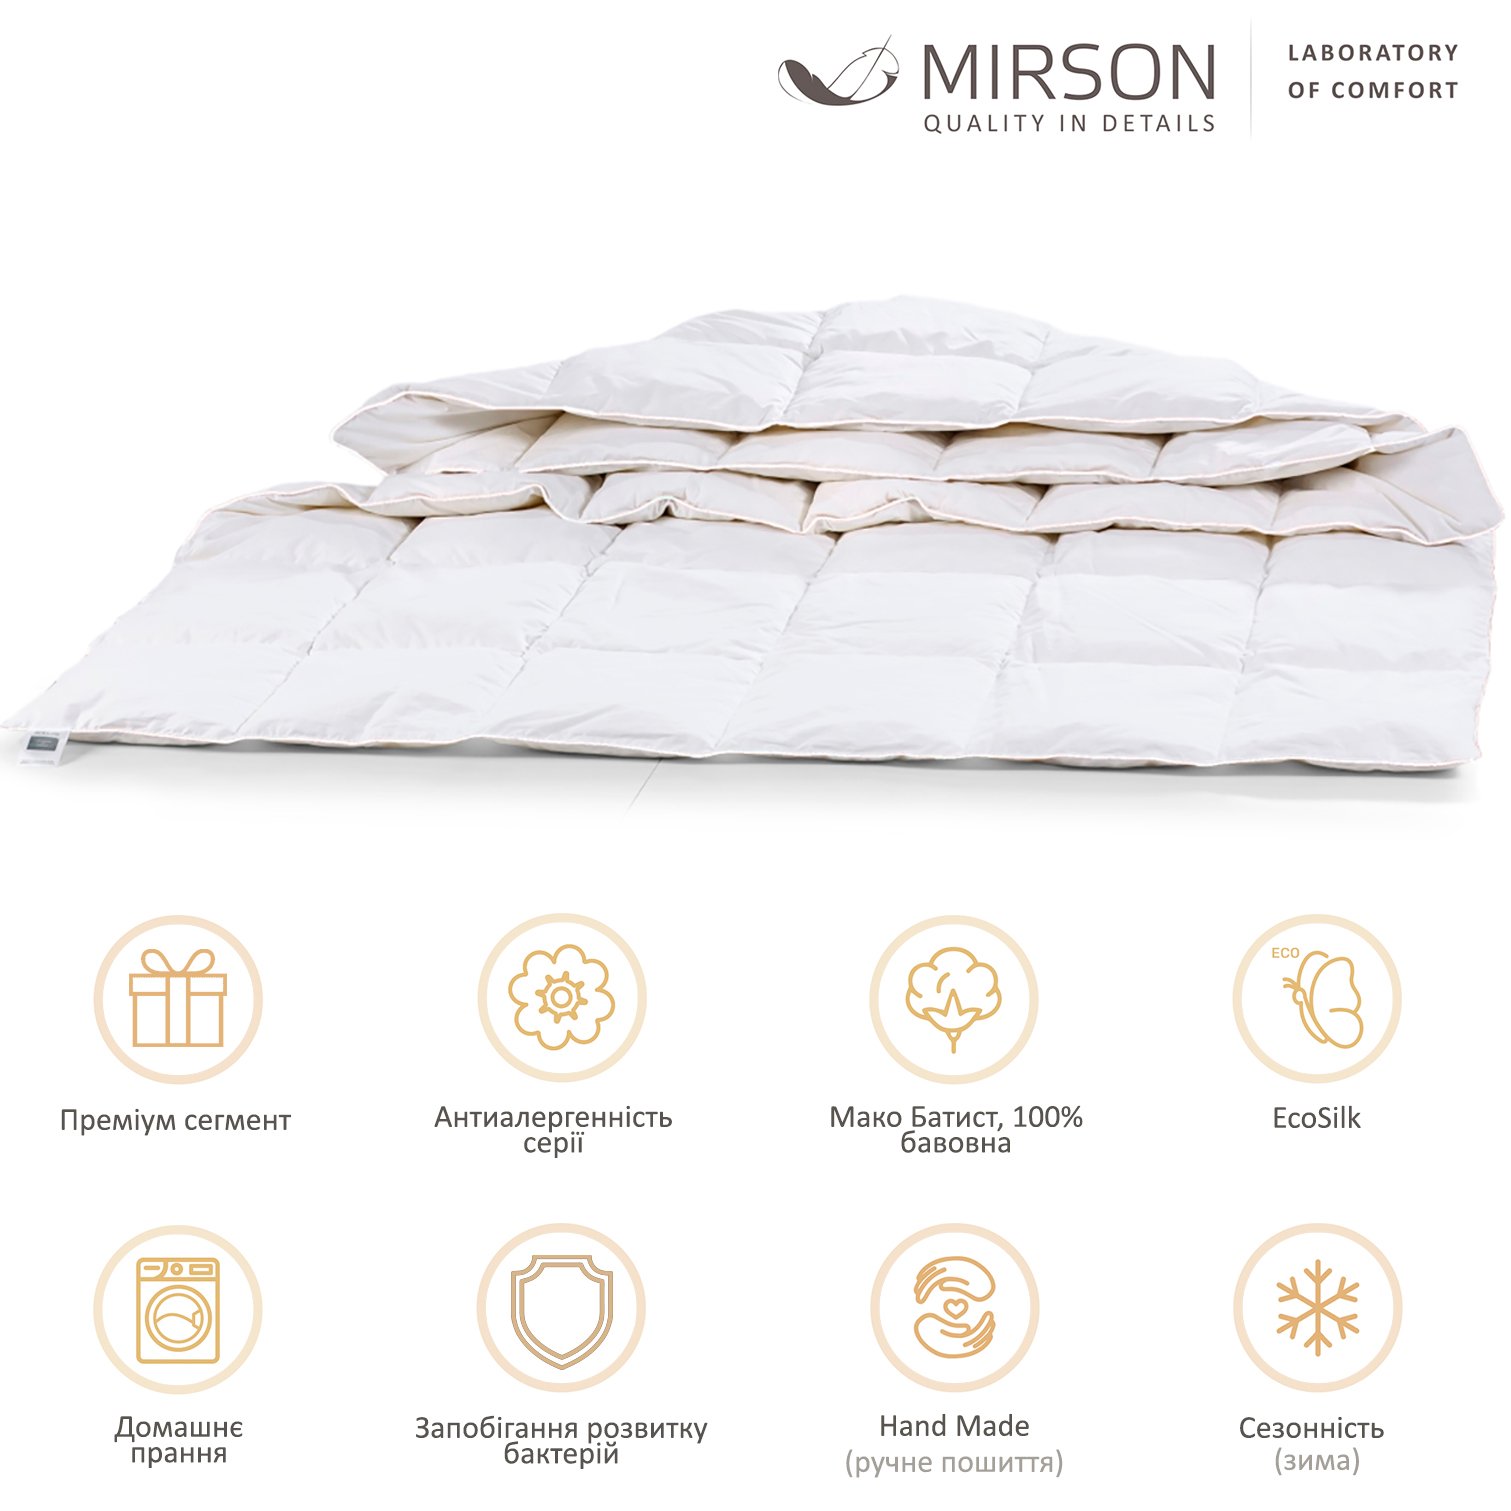 Одеяло антиаллергенное MirSon Luxury Exclusive EcoSilk №1317, зимнее, 110x140 см, белое (237054433) - фото 5